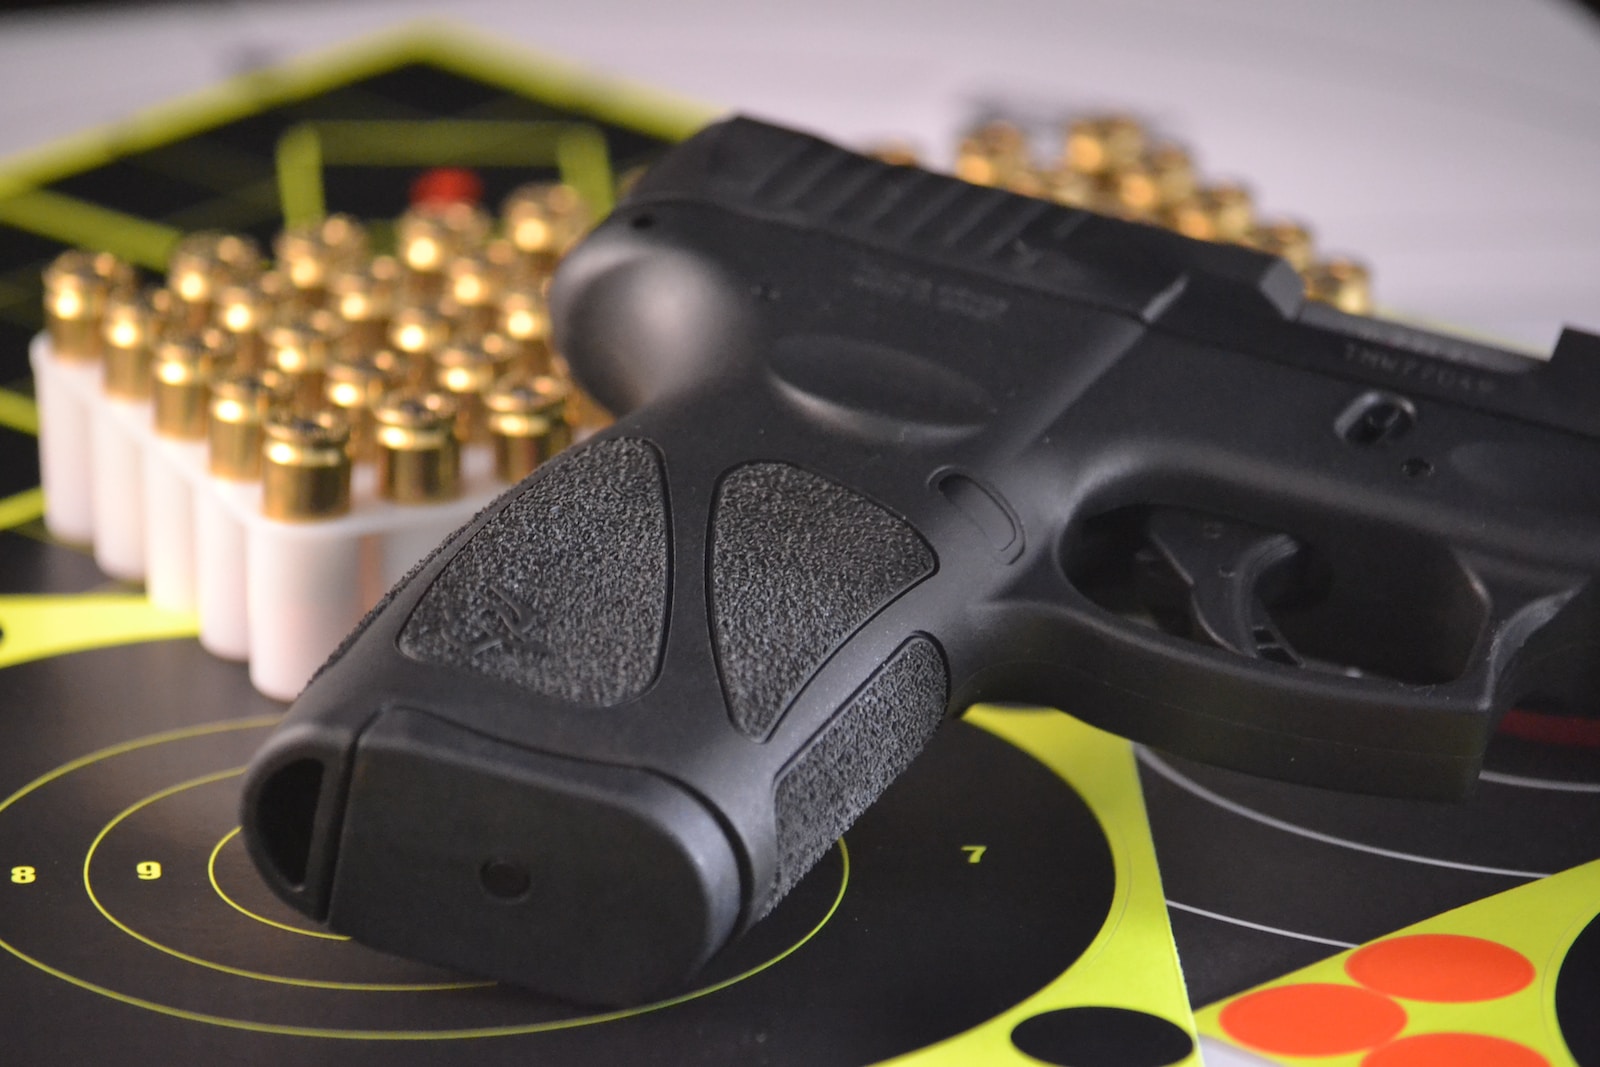  Taurus G3 black pistol beside bullets